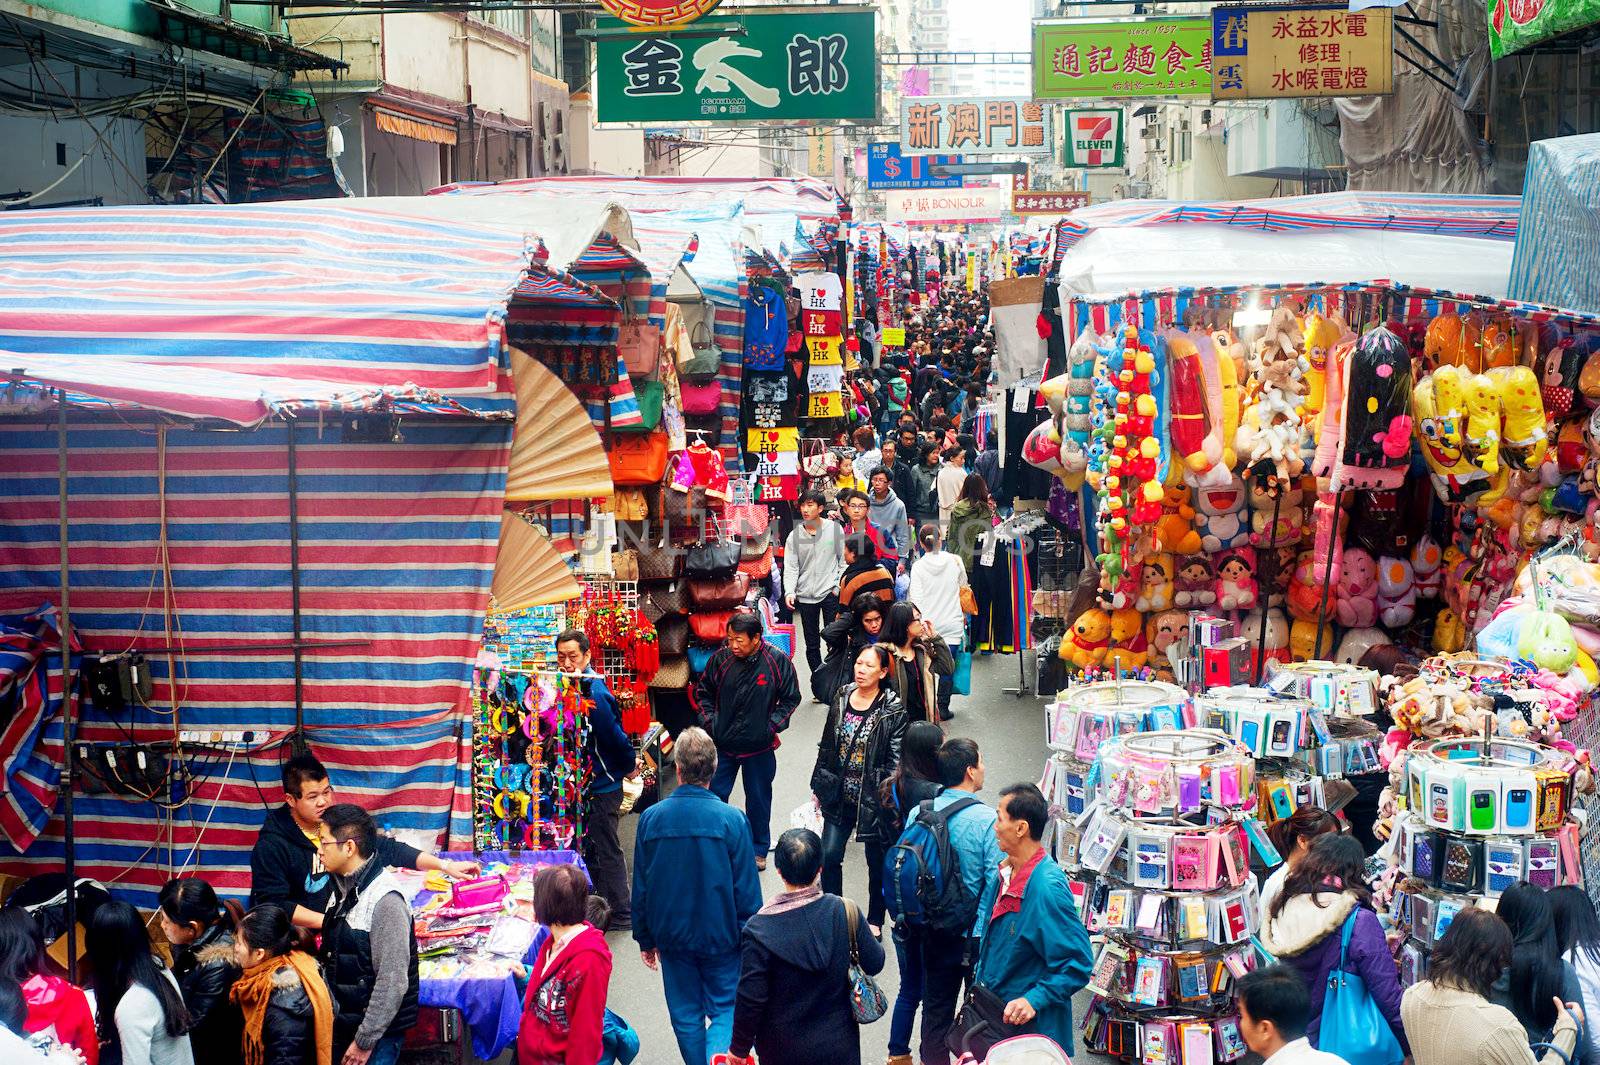 HK flee market by joyfull